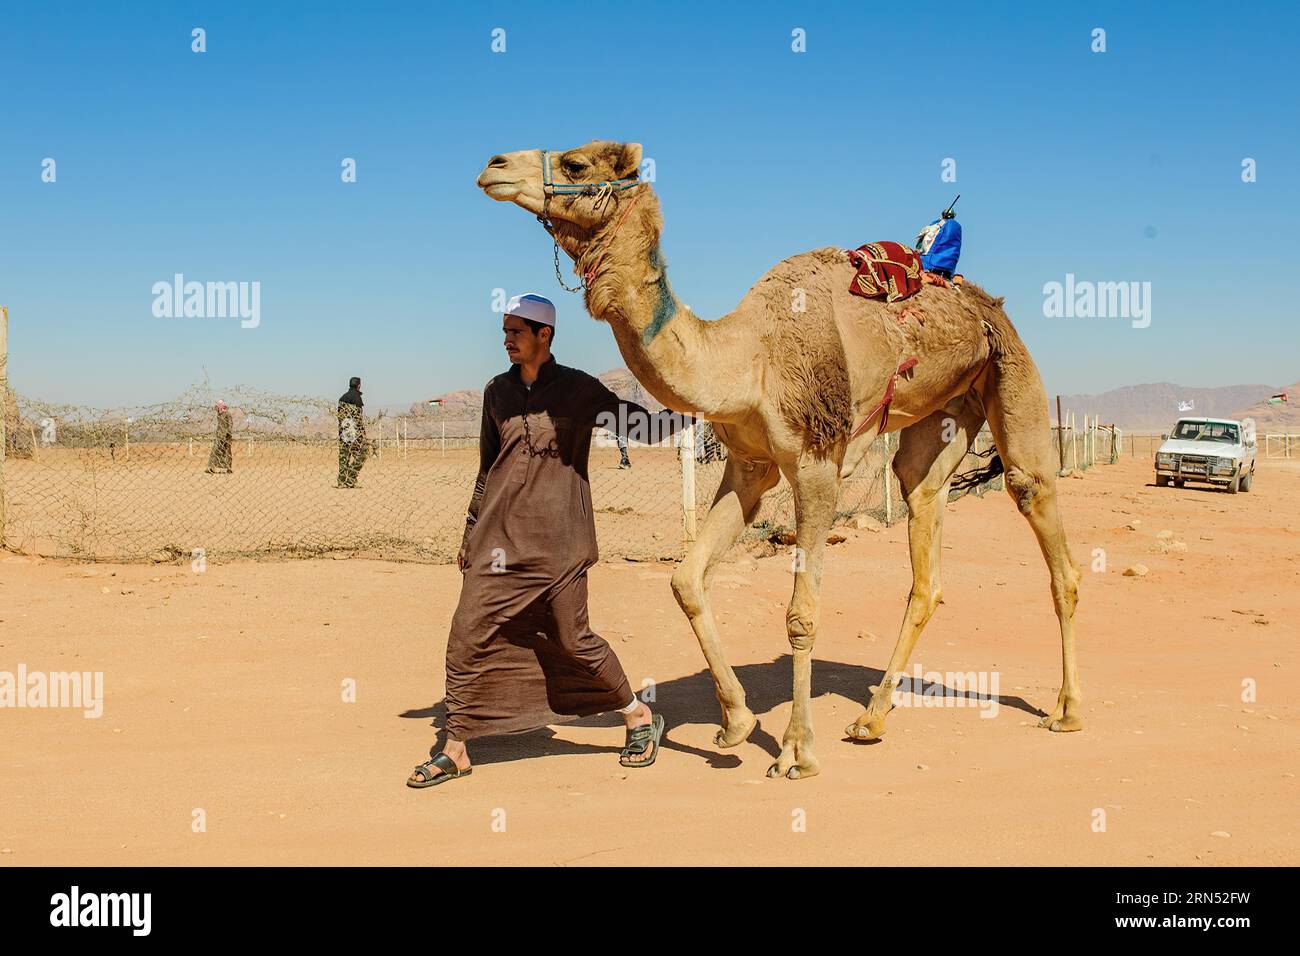 Kamelrennkamel mit elektronischem Jockey auf dem Rücken für das offizielle Kamelrennen, das von den Kamelhütern des Rennstalls auf die Rennstrecke geführt wird Stockfoto